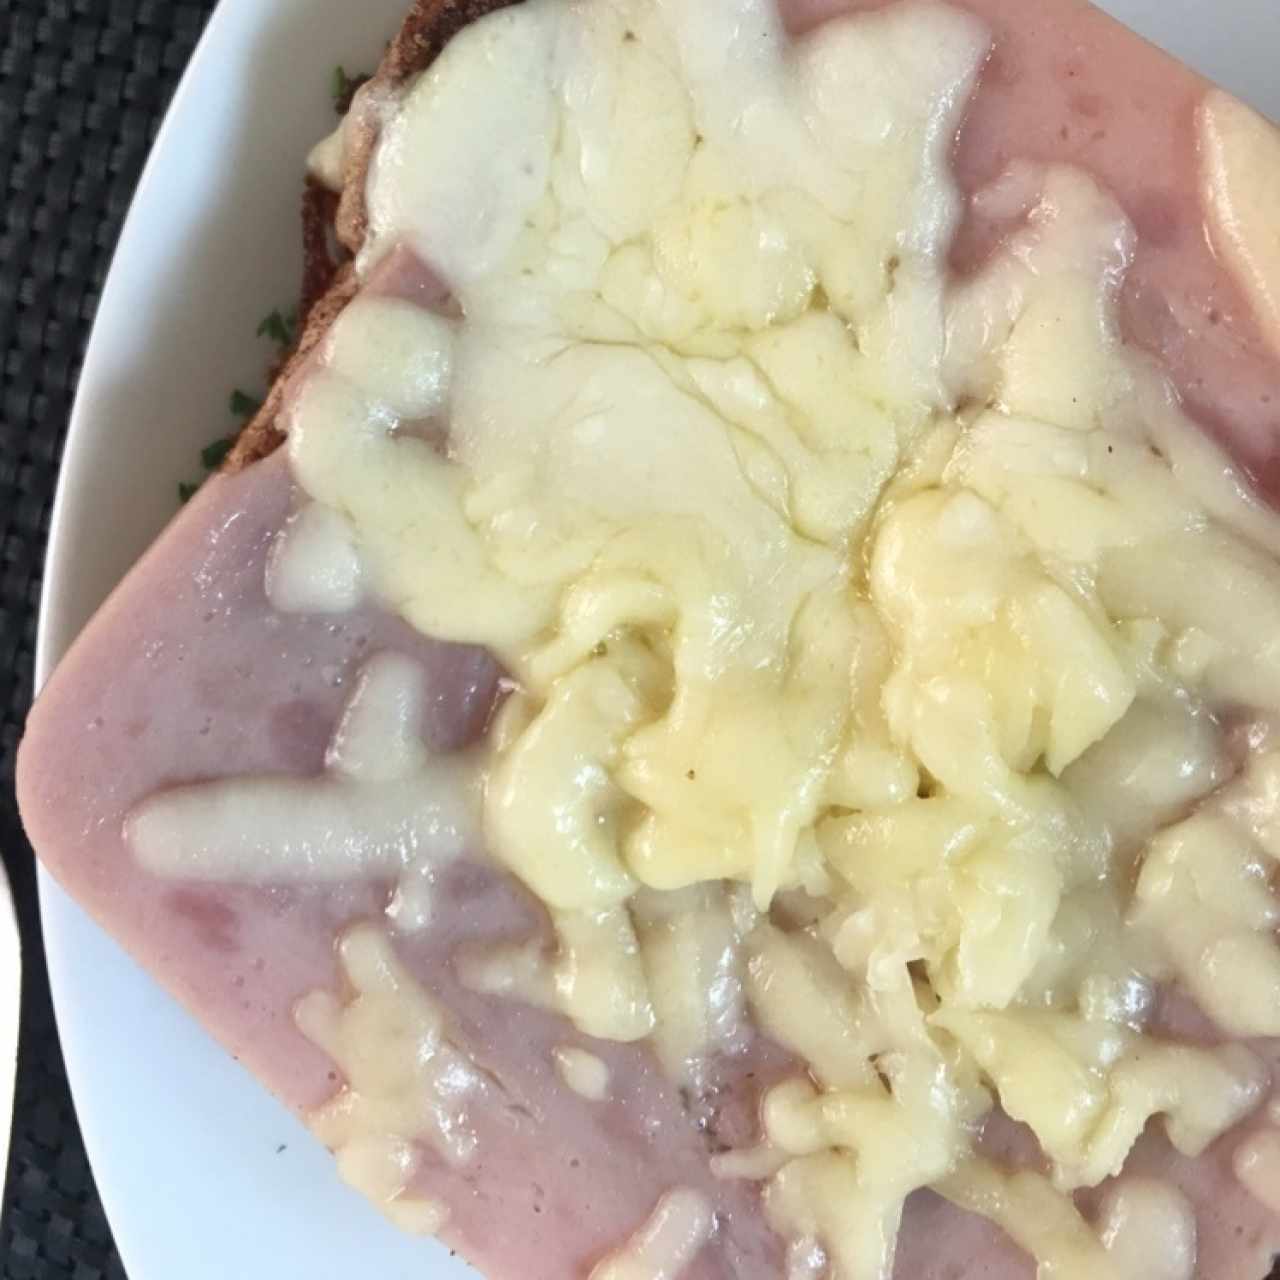 tostadas francesas com queso y jamon